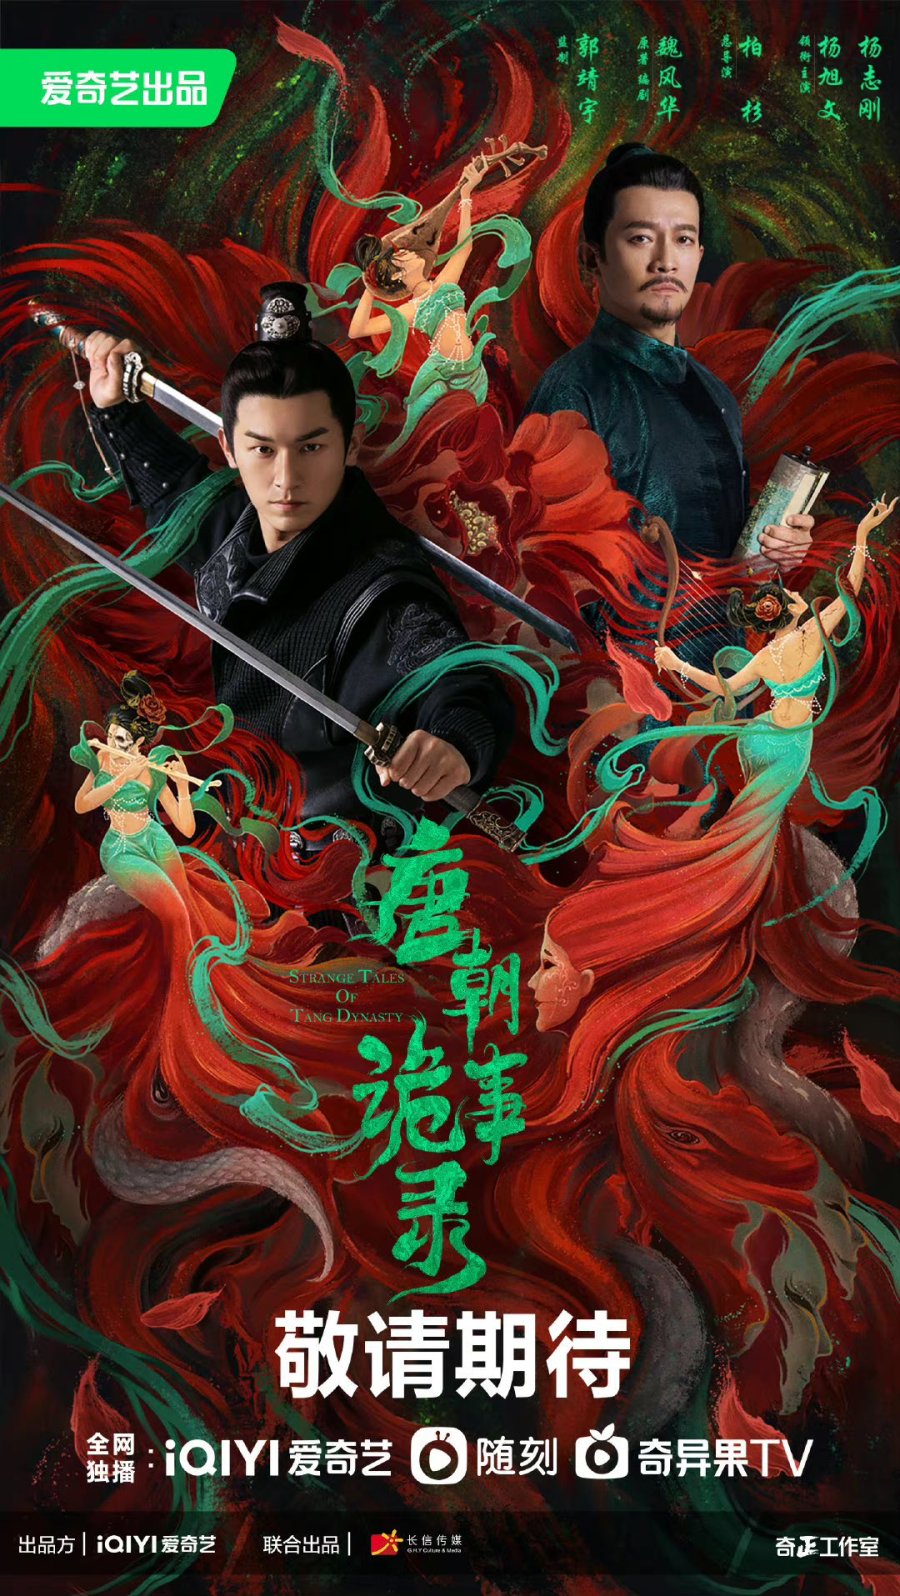 Смотреть «Странная легенда династии Тан» онлайн сериал в хорошем качестве